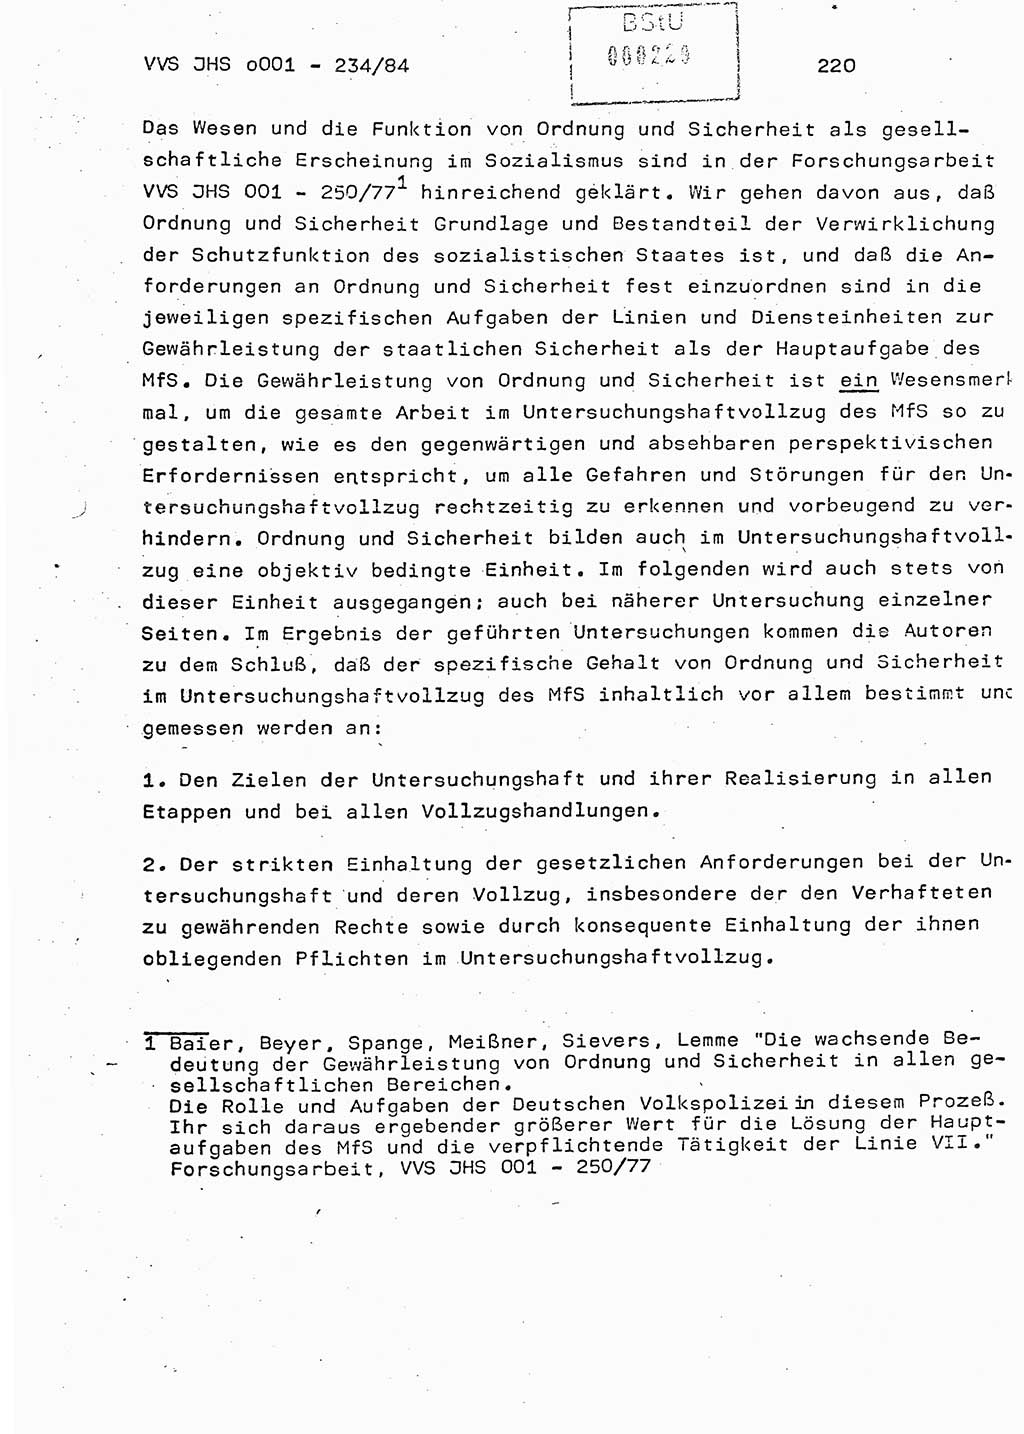 Dissertation Oberst Siegfried Rataizick (Abt. ⅩⅣ), Oberstleutnant Volkmar Heinz (Abt. ⅩⅣ), Oberstleutnant Werner Stein (HA Ⅸ), Hauptmann Heinz Conrad (JHS), Ministerium für Staatssicherheit (MfS) [Deutsche Demokratische Republik (DDR)], Juristische Hochschule (JHS), Vertrauliche Verschlußsache (VVS) o001-234/84, Potsdam 1984, Seite 220 (Diss. MfS DDR JHS VVS o001-234/84 1984, S. 220)